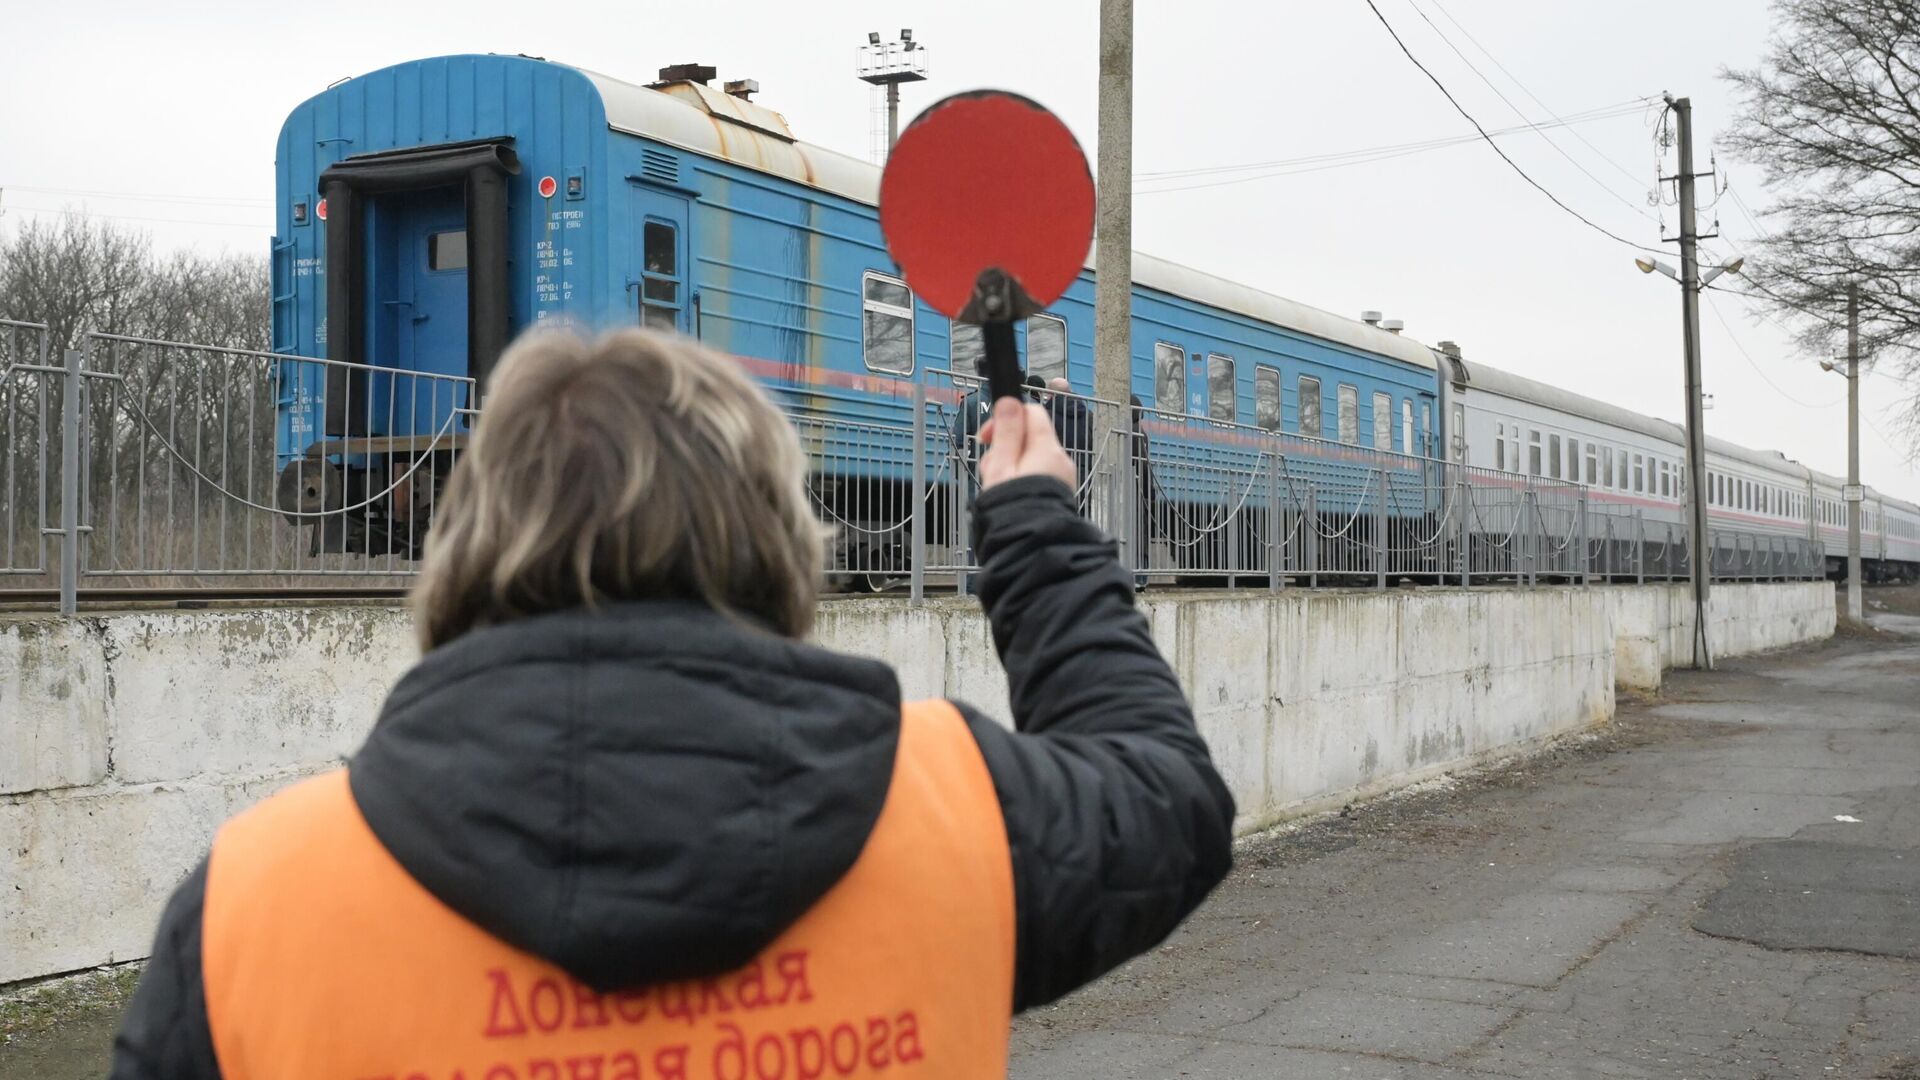 Отправление поезда с железнодорожной станции Донецк-2 во время эвакуации на территорию России - РИА Новости, 1920, 20.02.2022